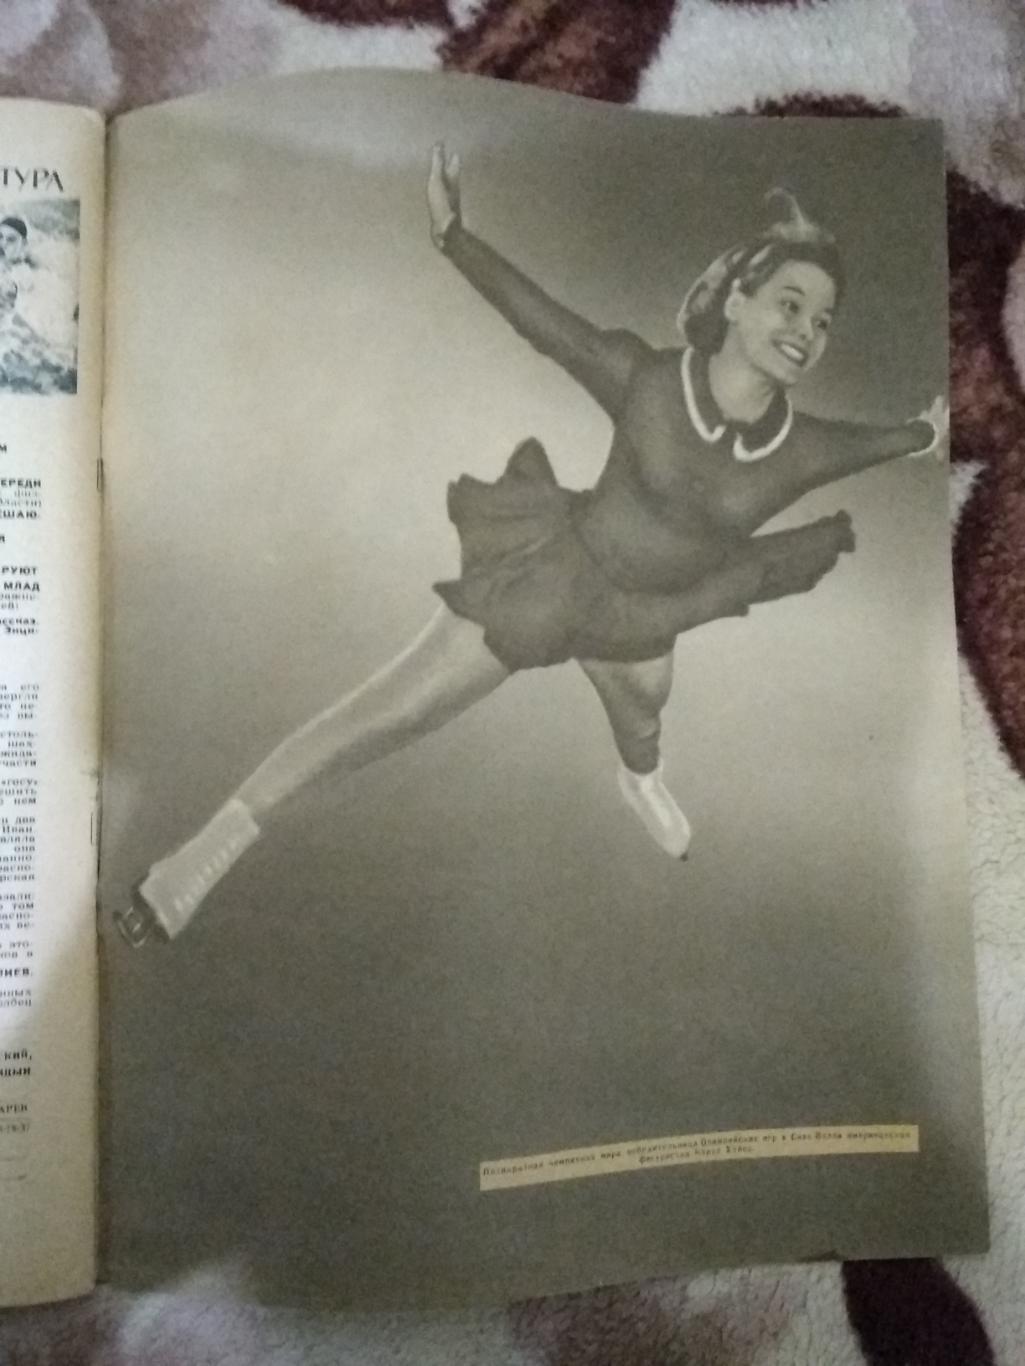 Журнал.Физкультура и спорт № 3 1961 г. (ФиС). 2